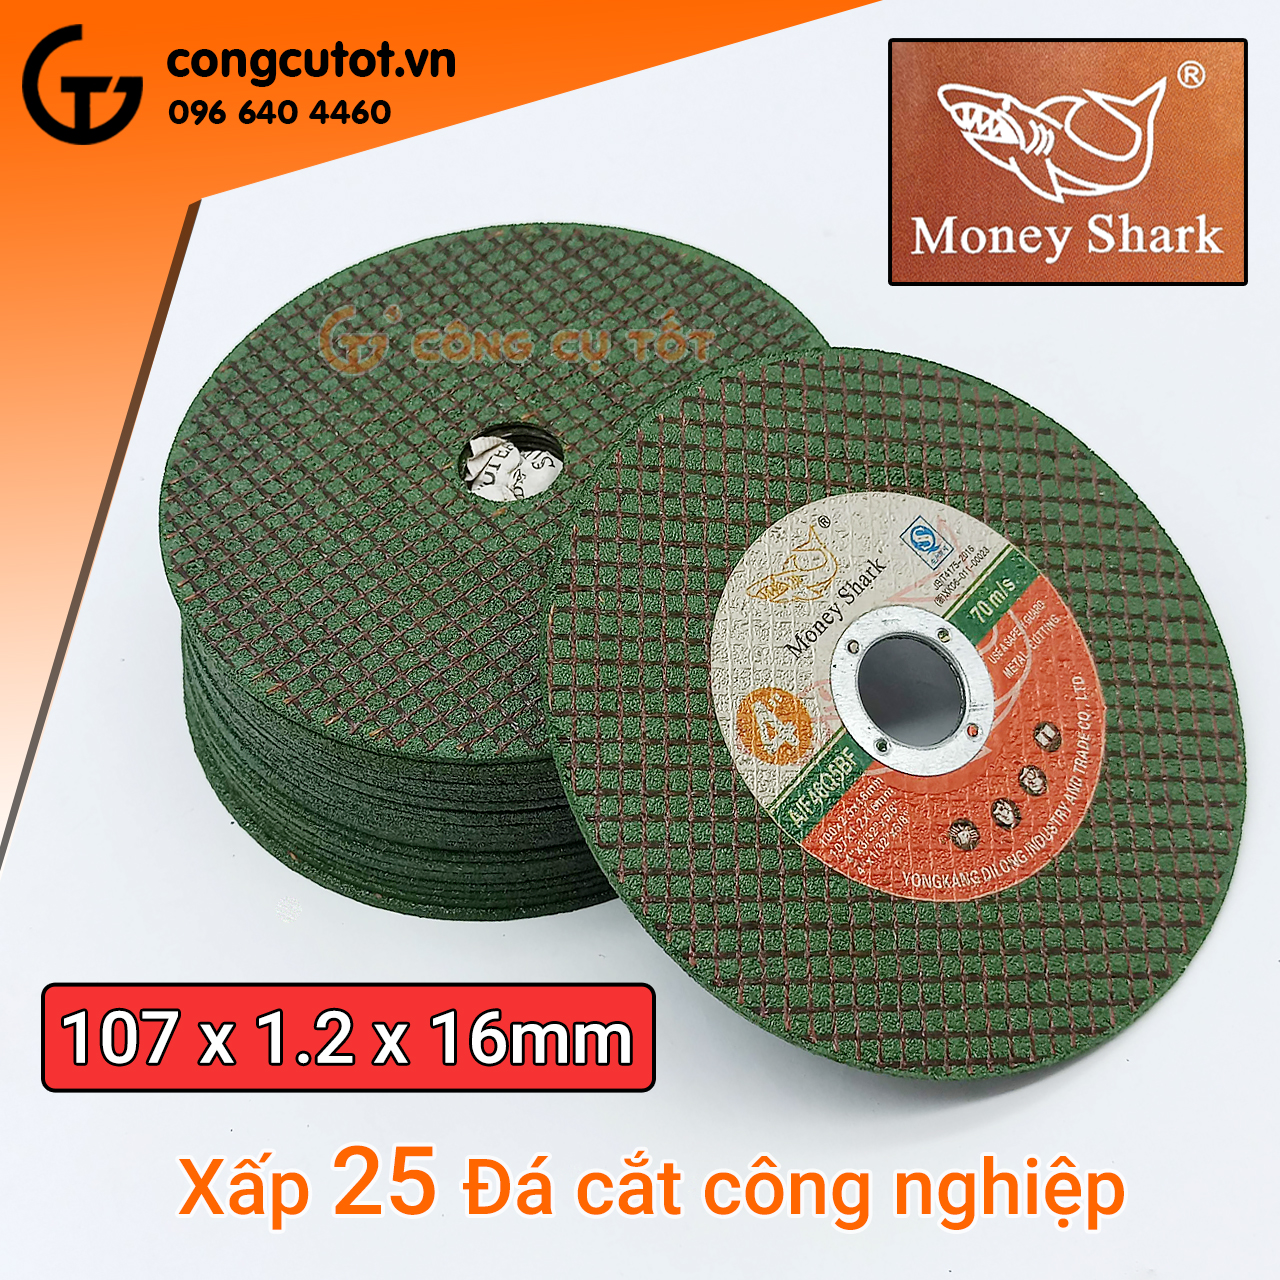 CÔNG CỤ TỐT phân phối 1 xấp gồm 25 Đá cắt công nghiệp 107 x 1.2 x 16mm Money Shark đỏ